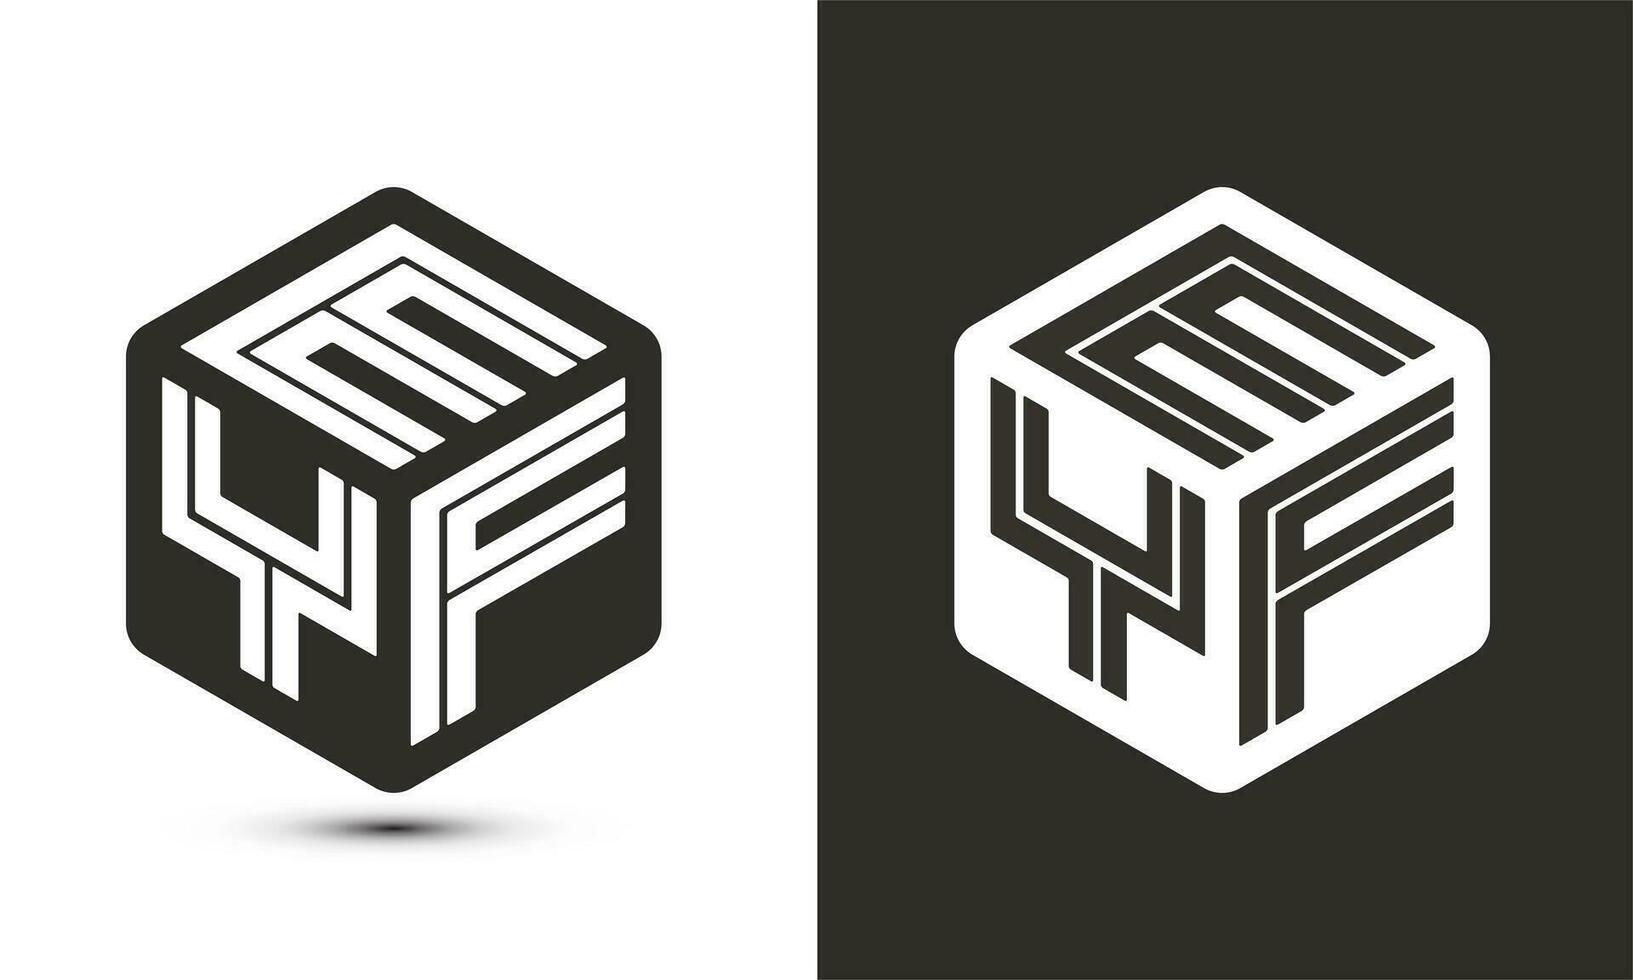 eyf brief logo ontwerp met illustrator kubus logo, vector logo modern alfabet doopvont overlappen stijl.